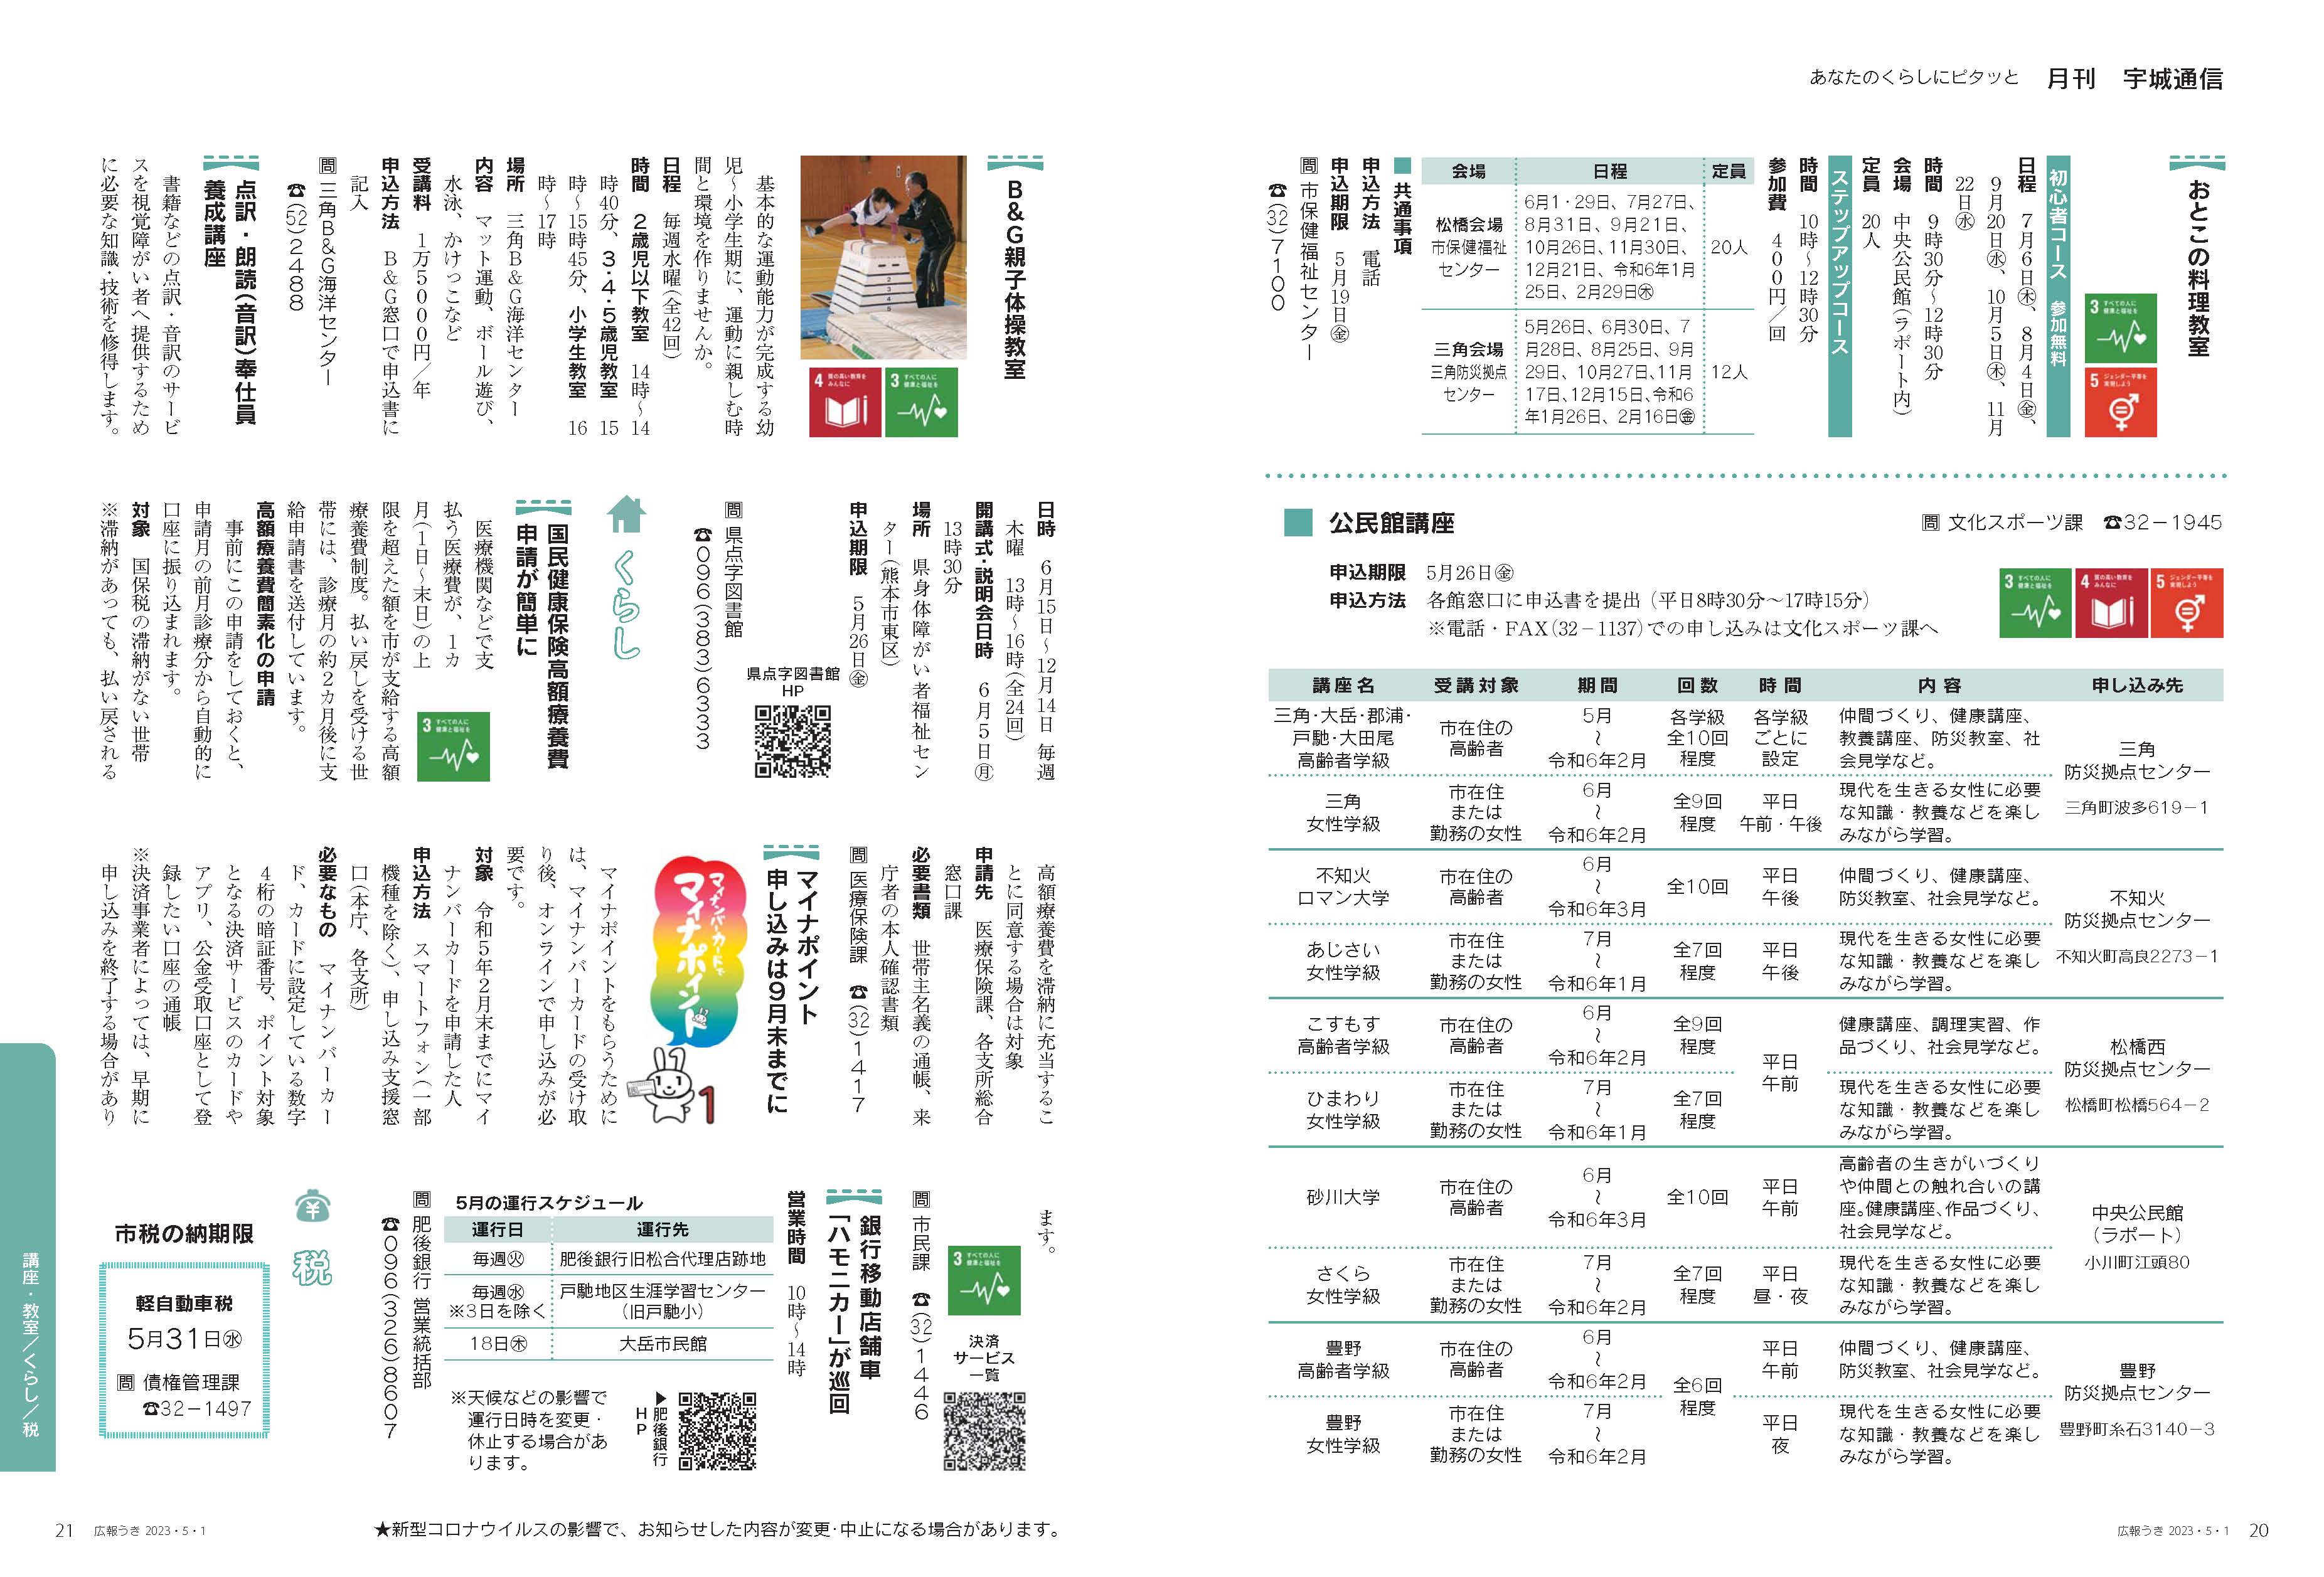 P20、P21   あなたのくらしにピタッと   月刊 宇城通信の記事画像、詳細はPDFファイルを参照下さい。